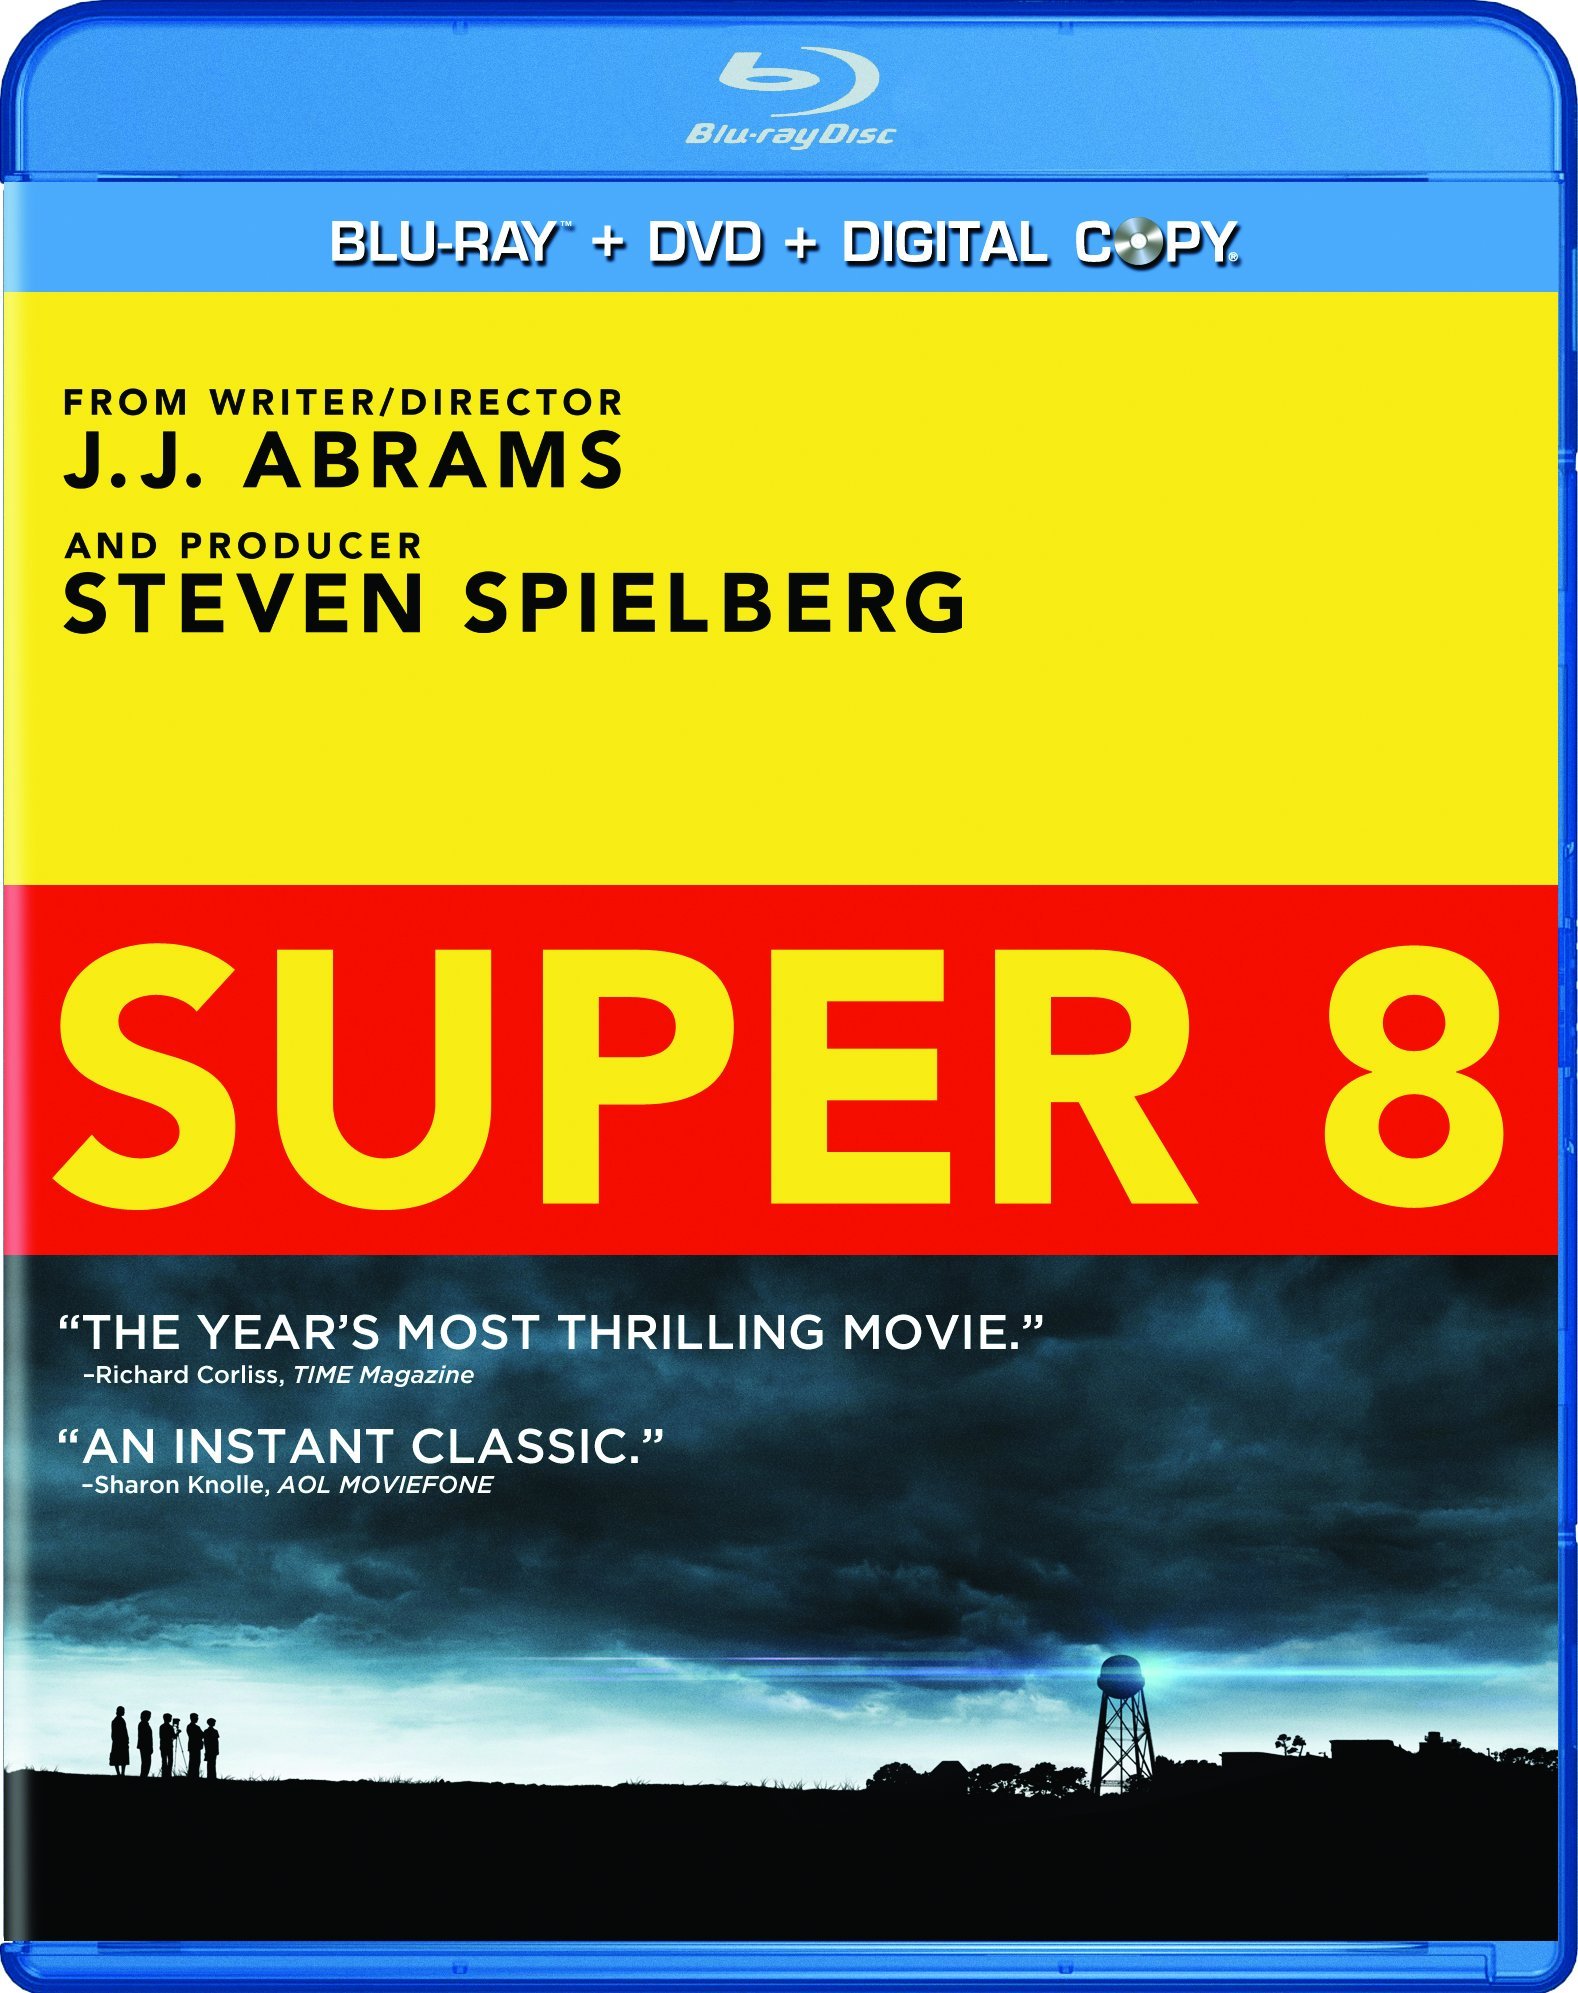 Super 8 DVD Release Date November 22, 2011